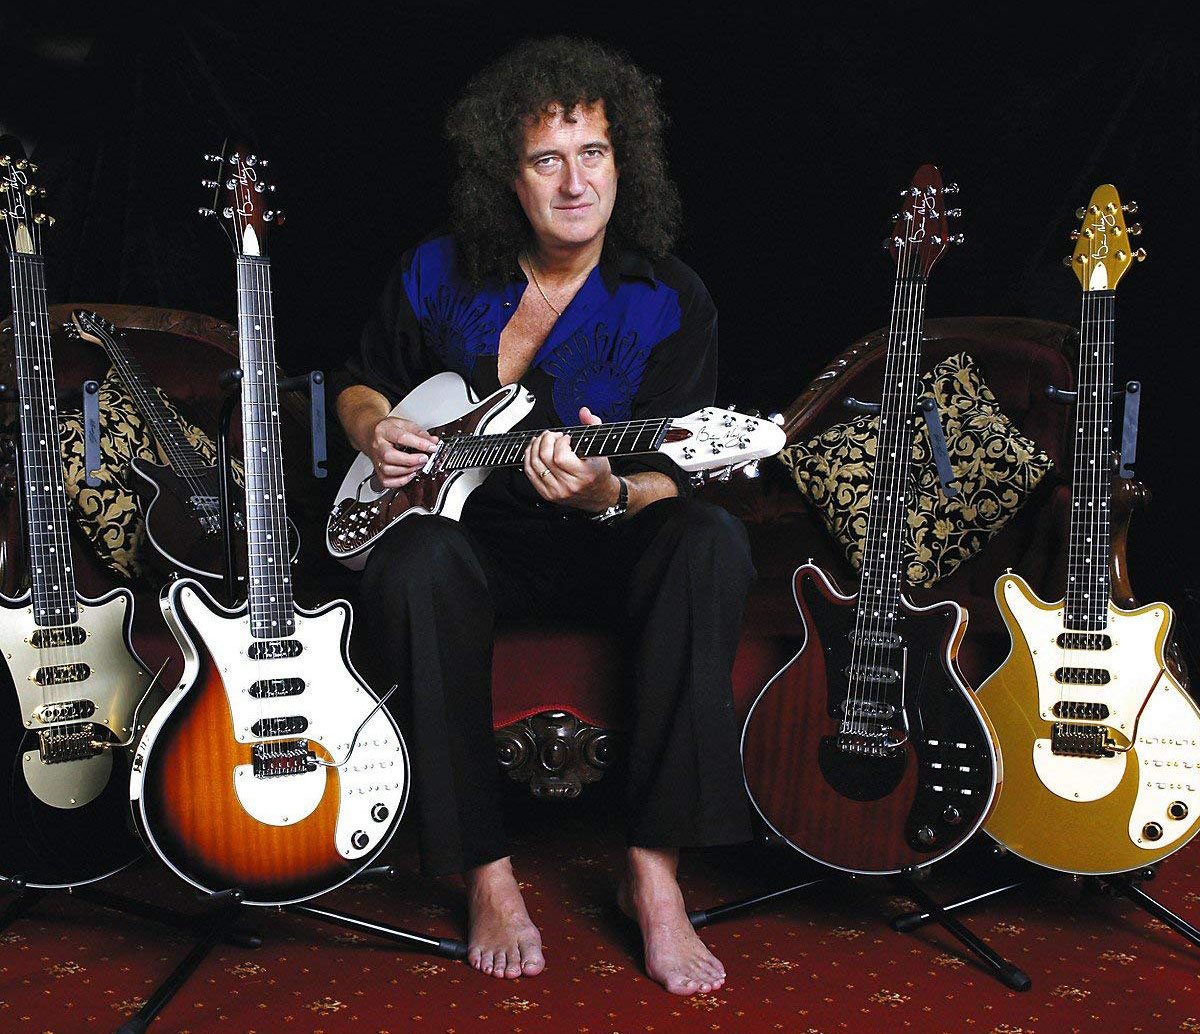 Brian May Guitars